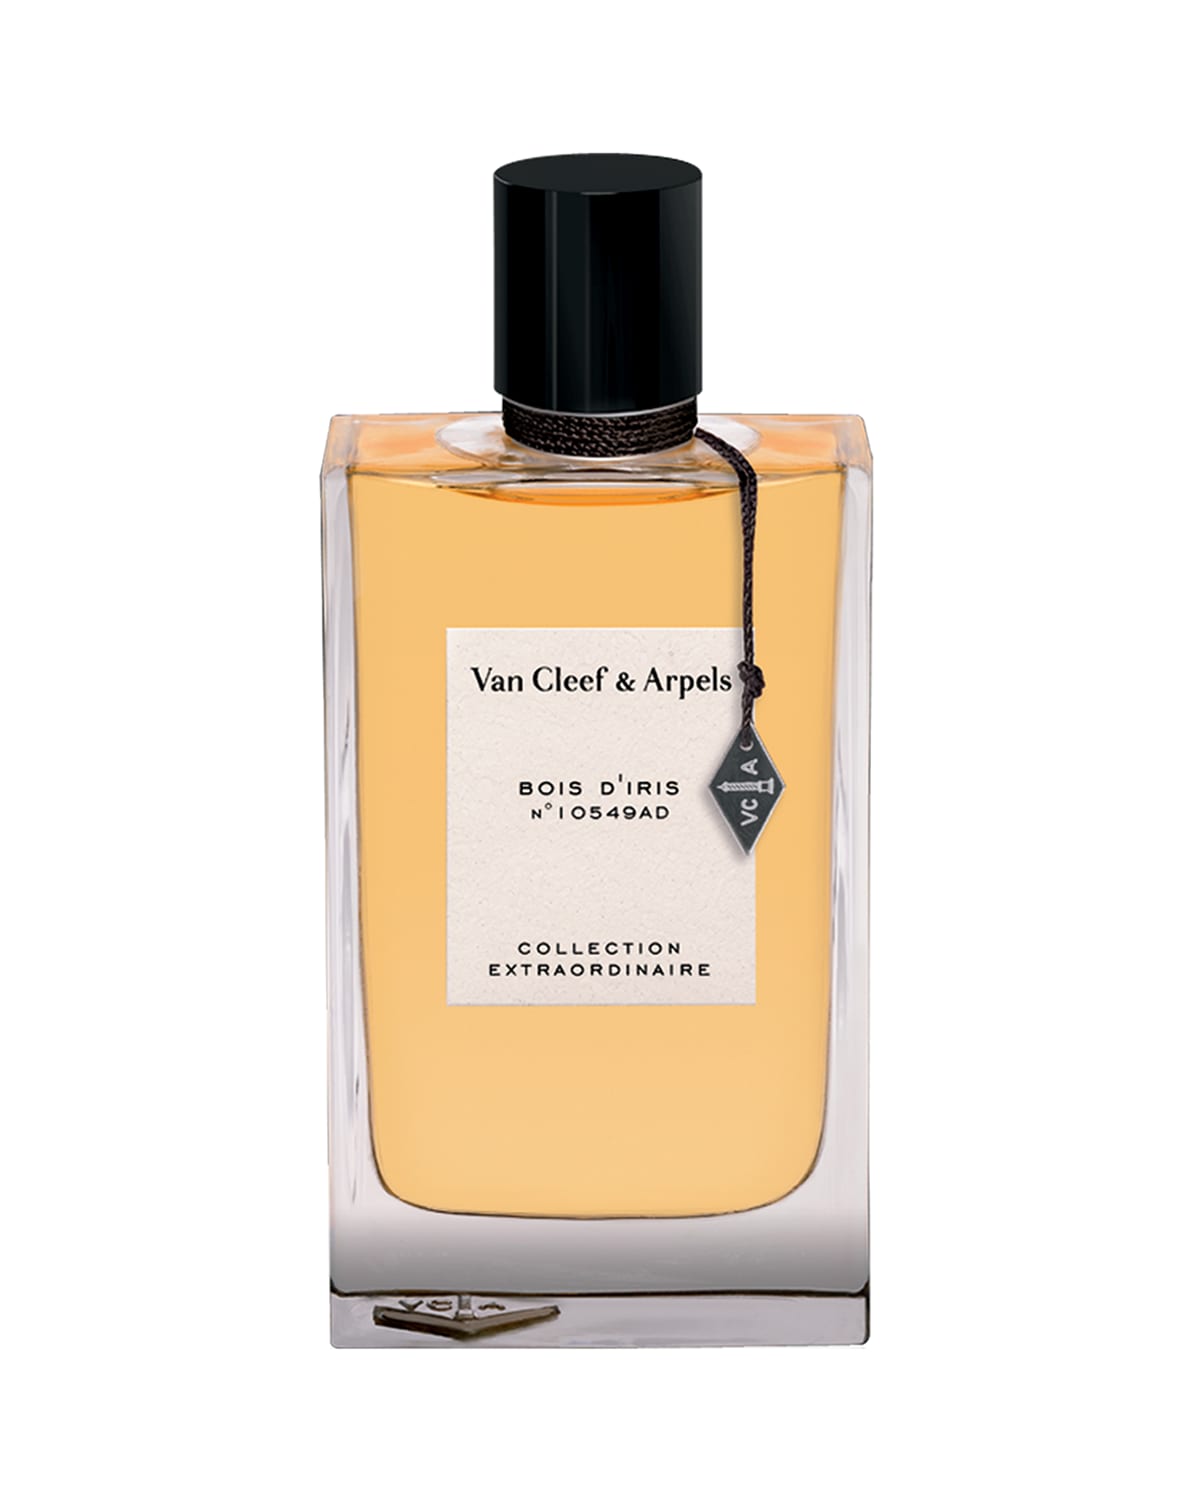 1.5 oz. Exclusive Collection Extraordinaire Bois D'Iris Eau de Parfum